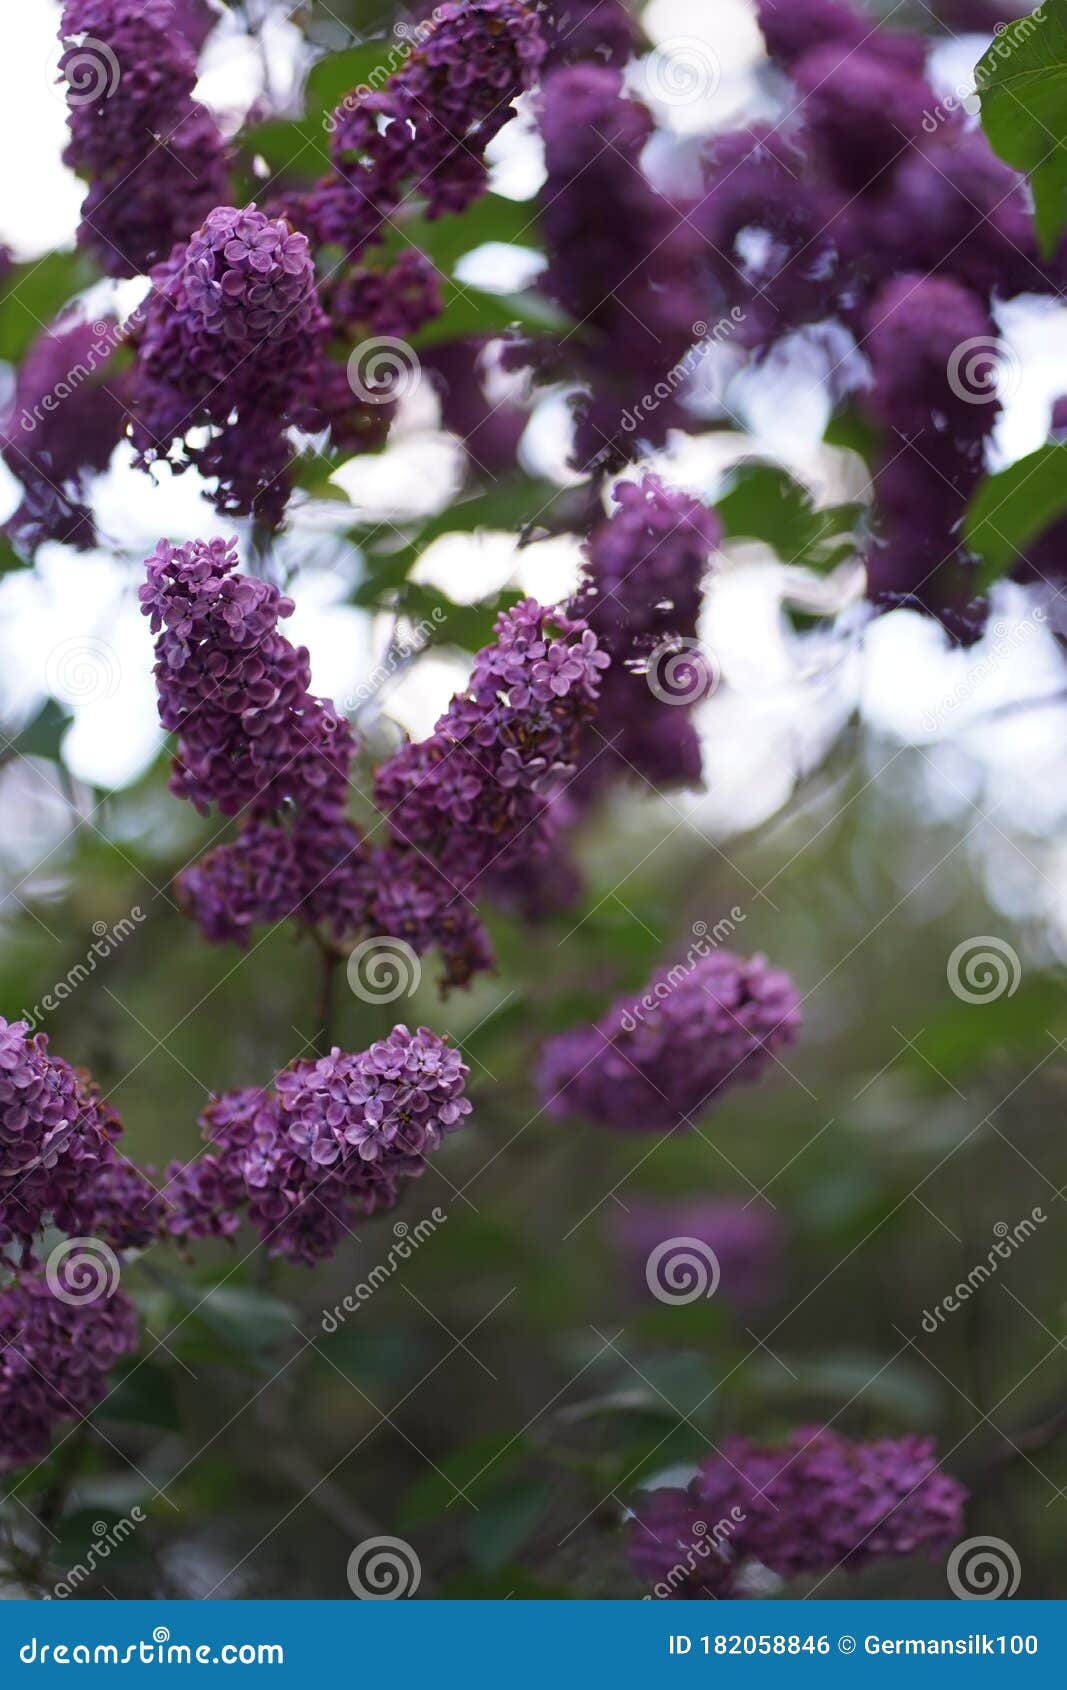 η Ryga Vulgaris Lilac ή η κοινή Lilac είναι ανθοφόρο φυτό στην οικογένεια  ελαιοειδών Στοκ Εικόνες - εικόνα από brampton, bloodsuckers: 182058846